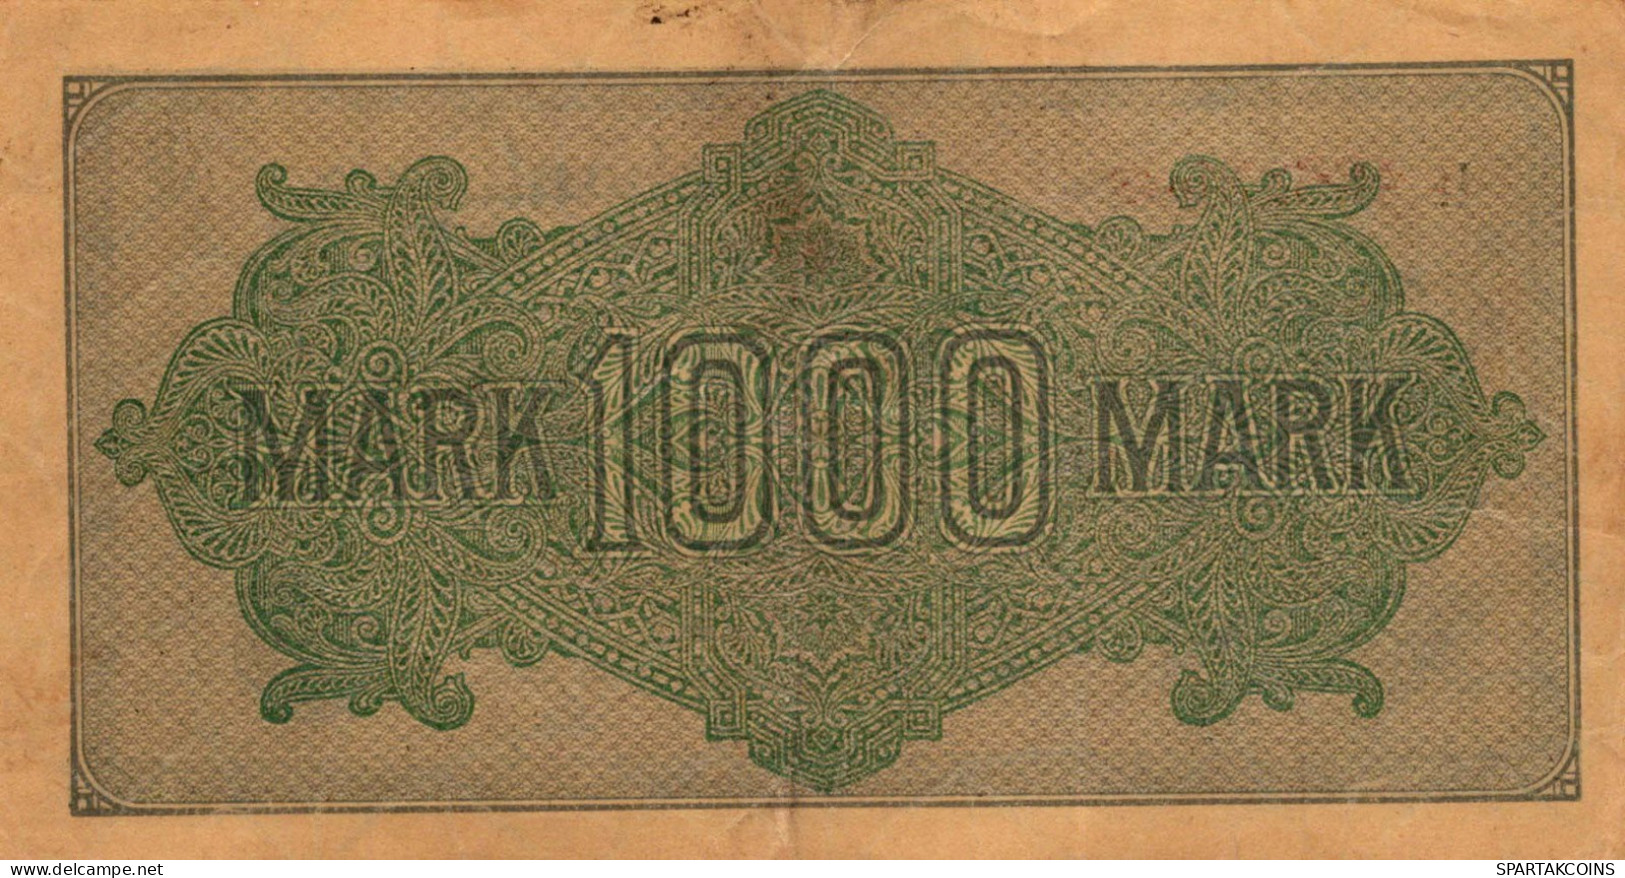 1000 MARK 1922 Stadt BERLIN DEUTSCHLAND Papiergeld Banknote #PL458 - Lokale Ausgaben